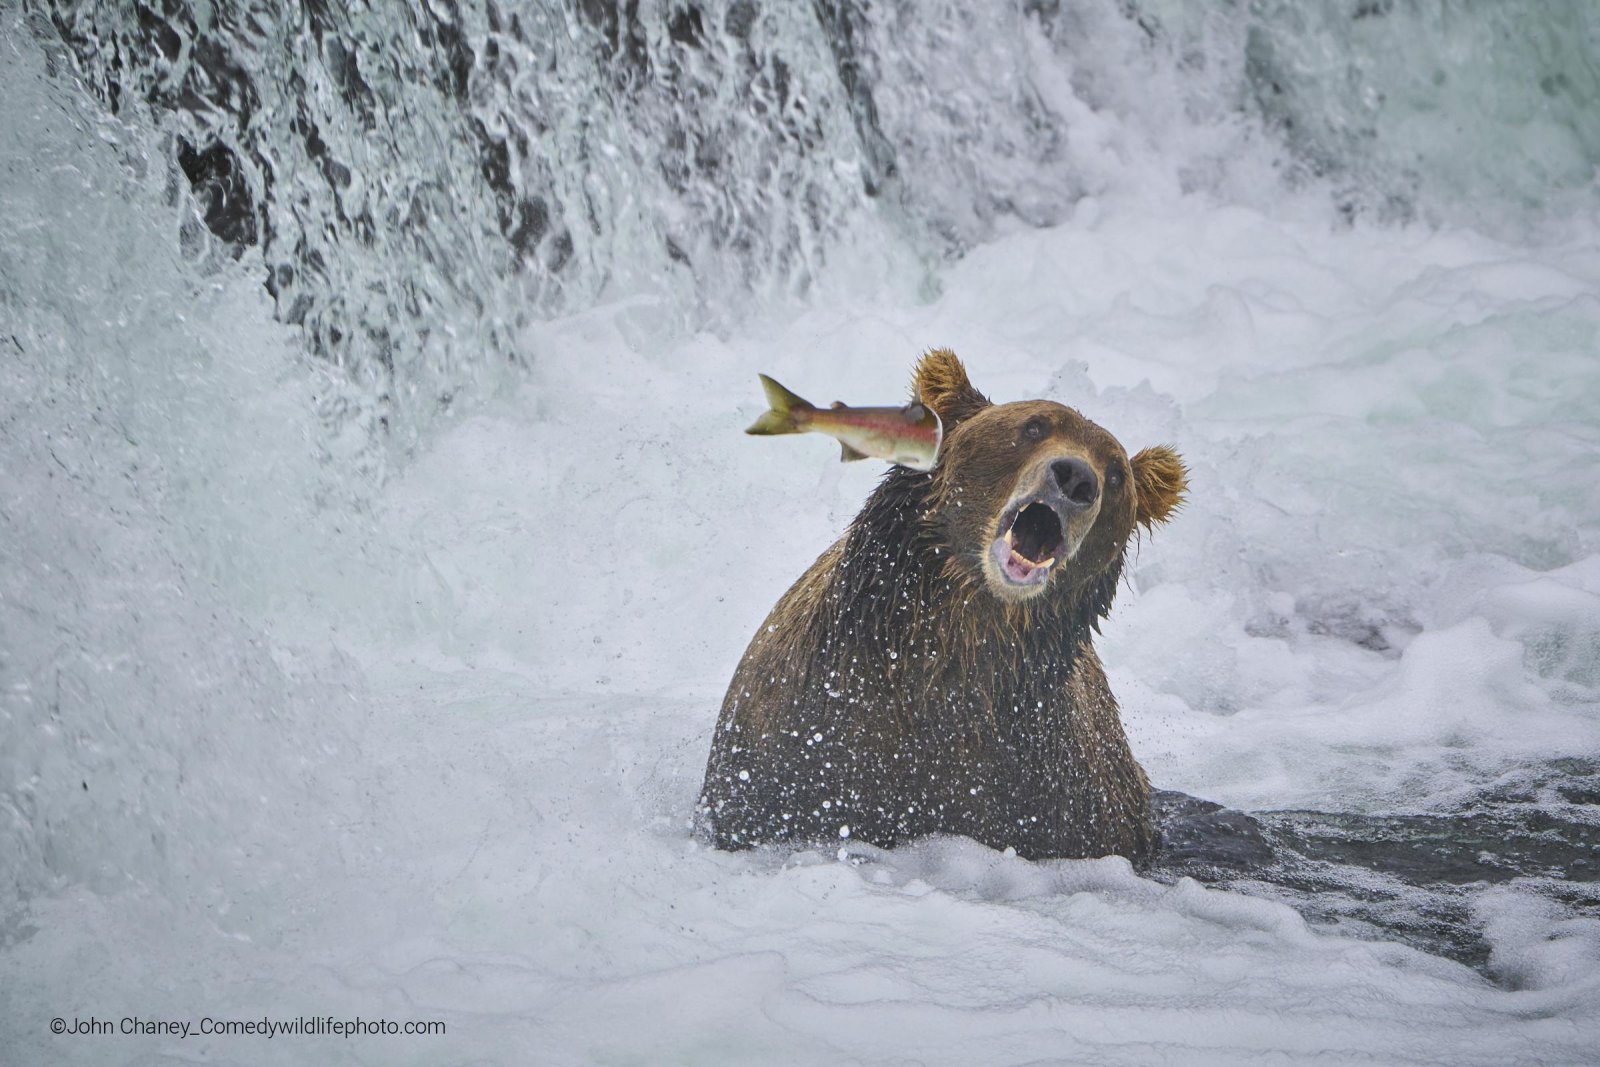 Funny wildlife photo of bear